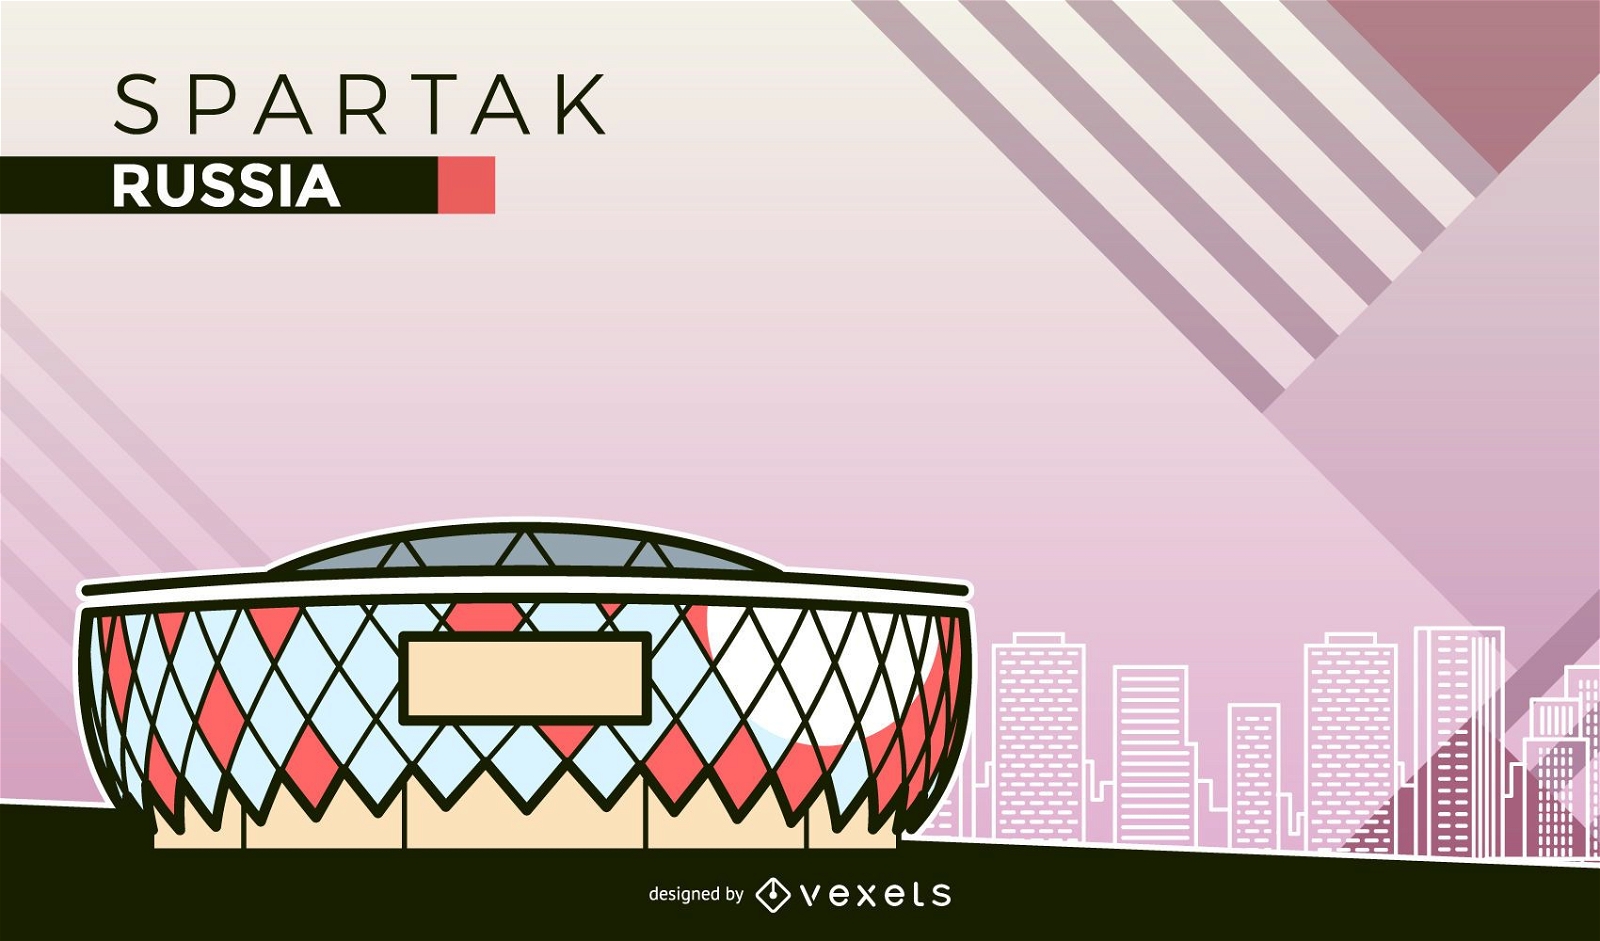 Dibujos animados del estadio de f?tbol Spartak de Mosc?